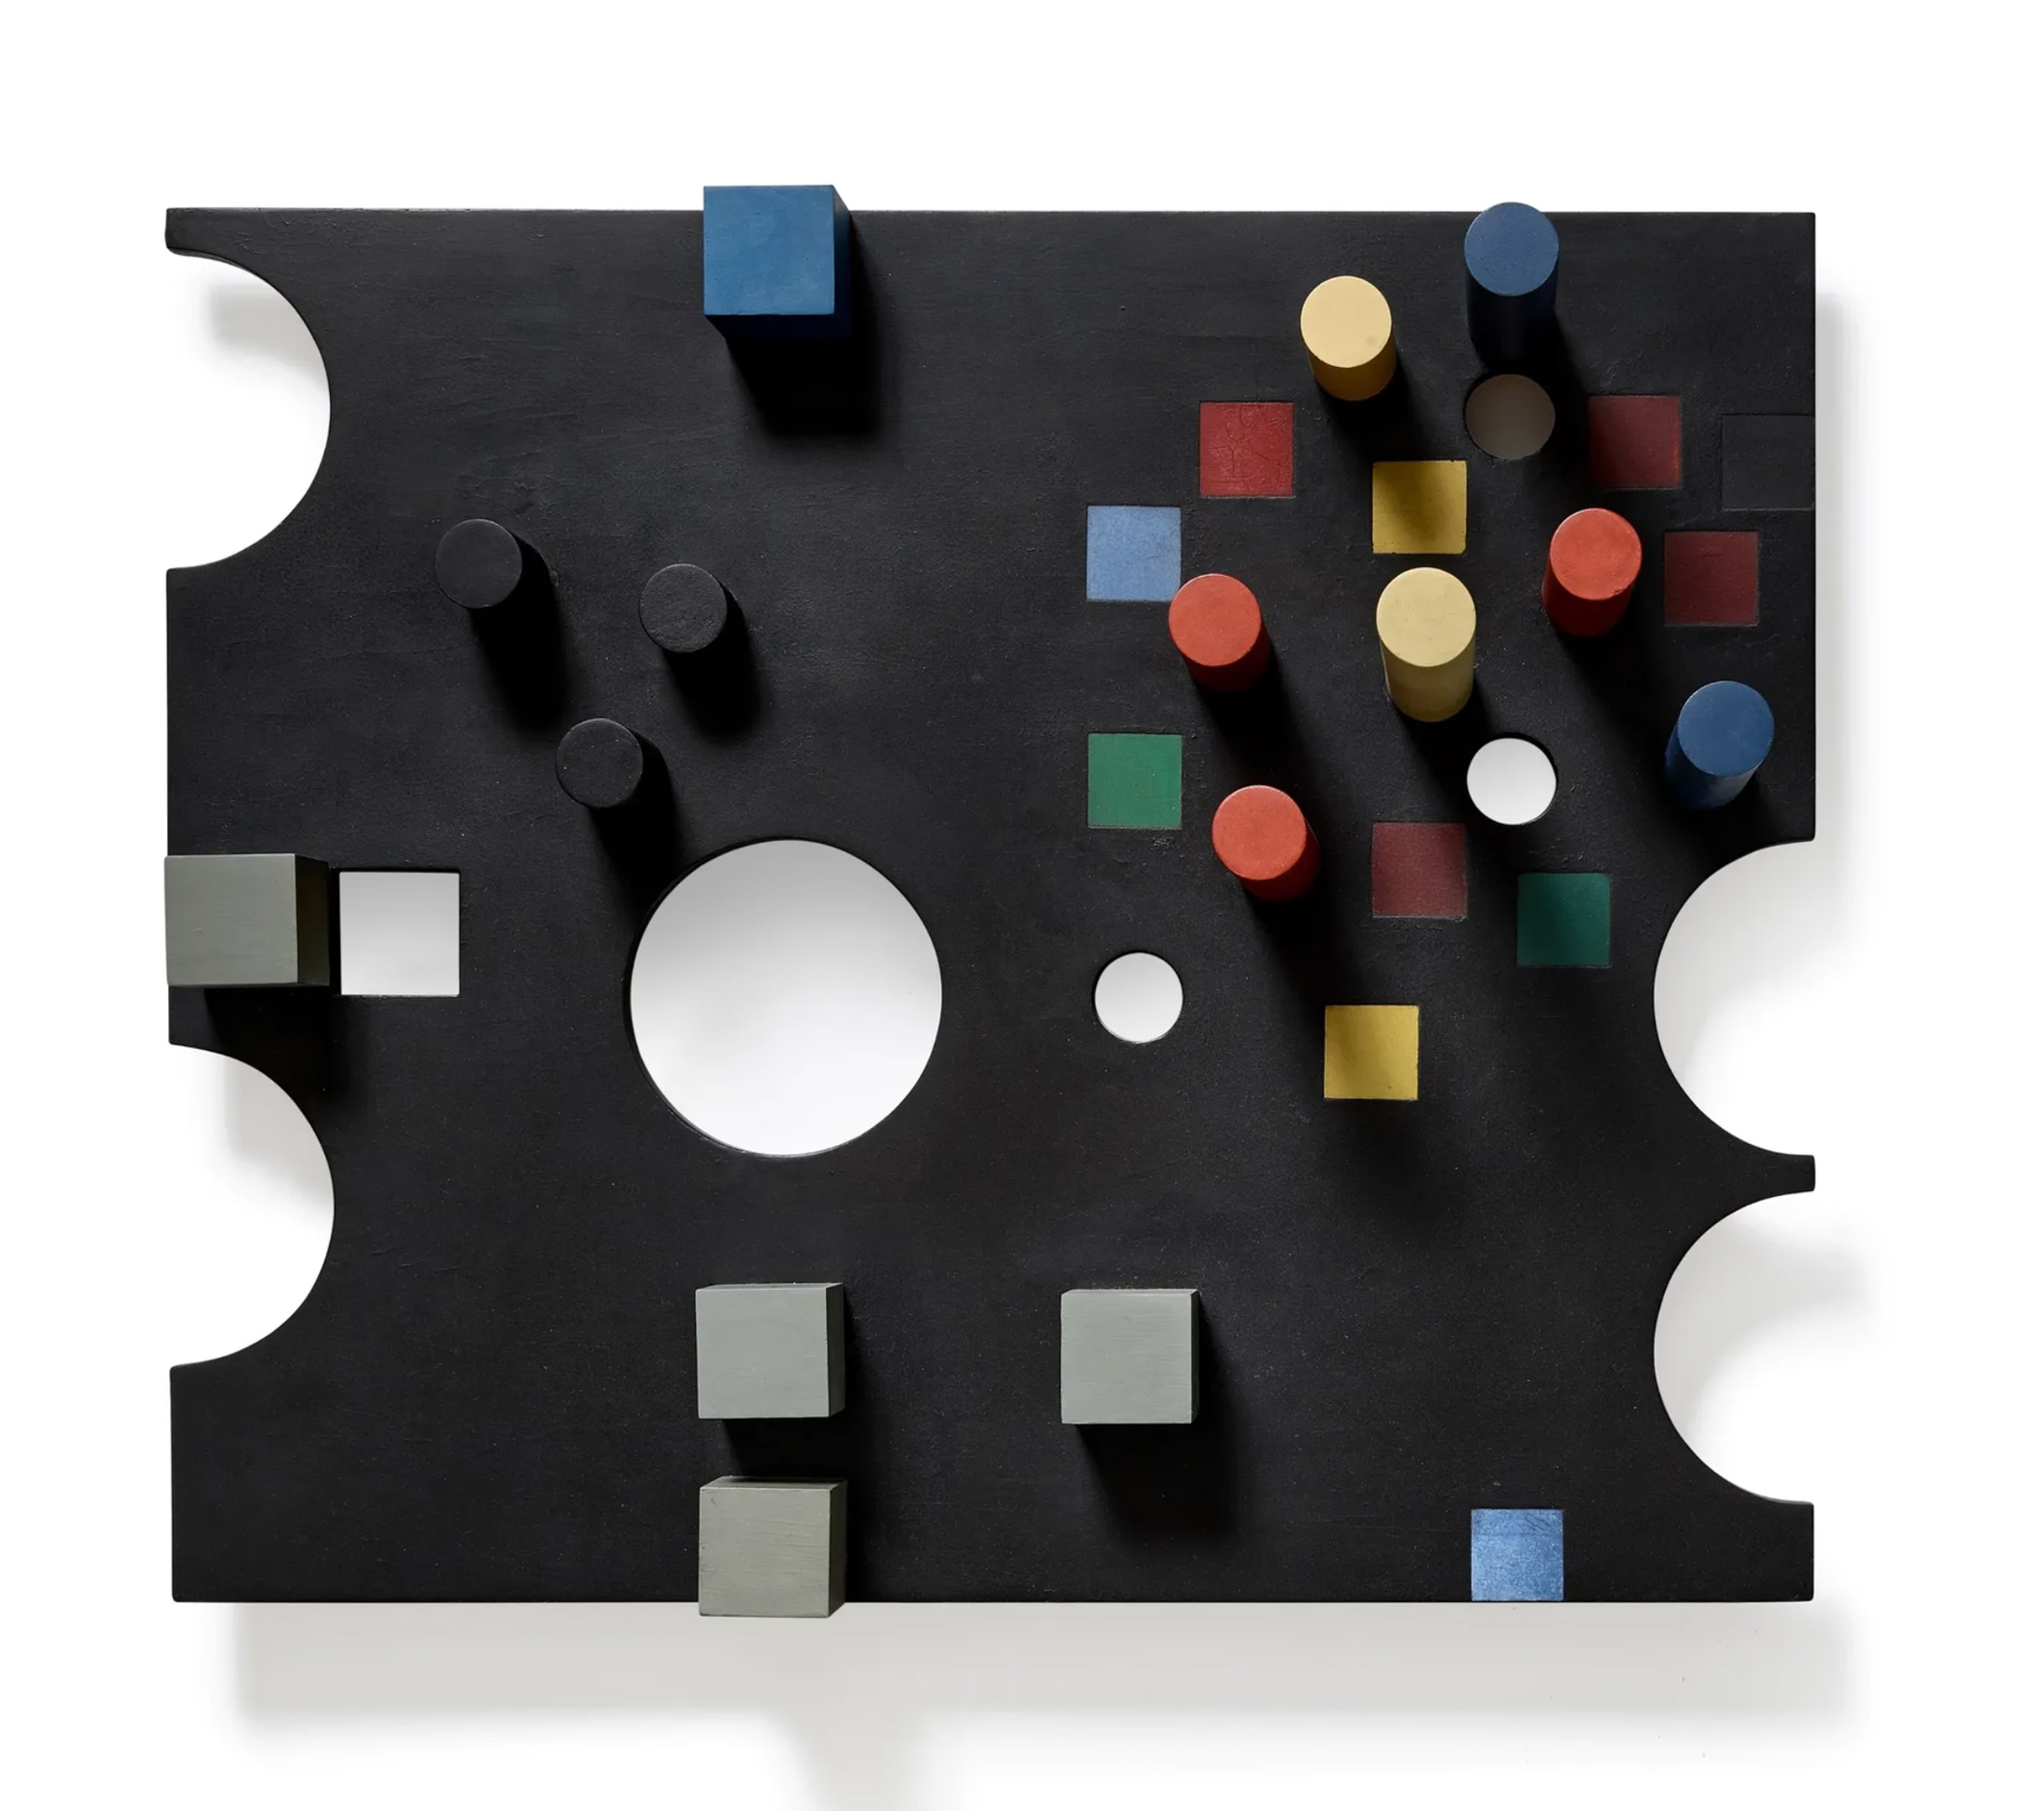 Sophie Taeuber-Arp, Relief rectangulaire, cercles découpés, carrés peints et découpés, cubes et cylindres surgissants (1938)Courtesy Sotheby's